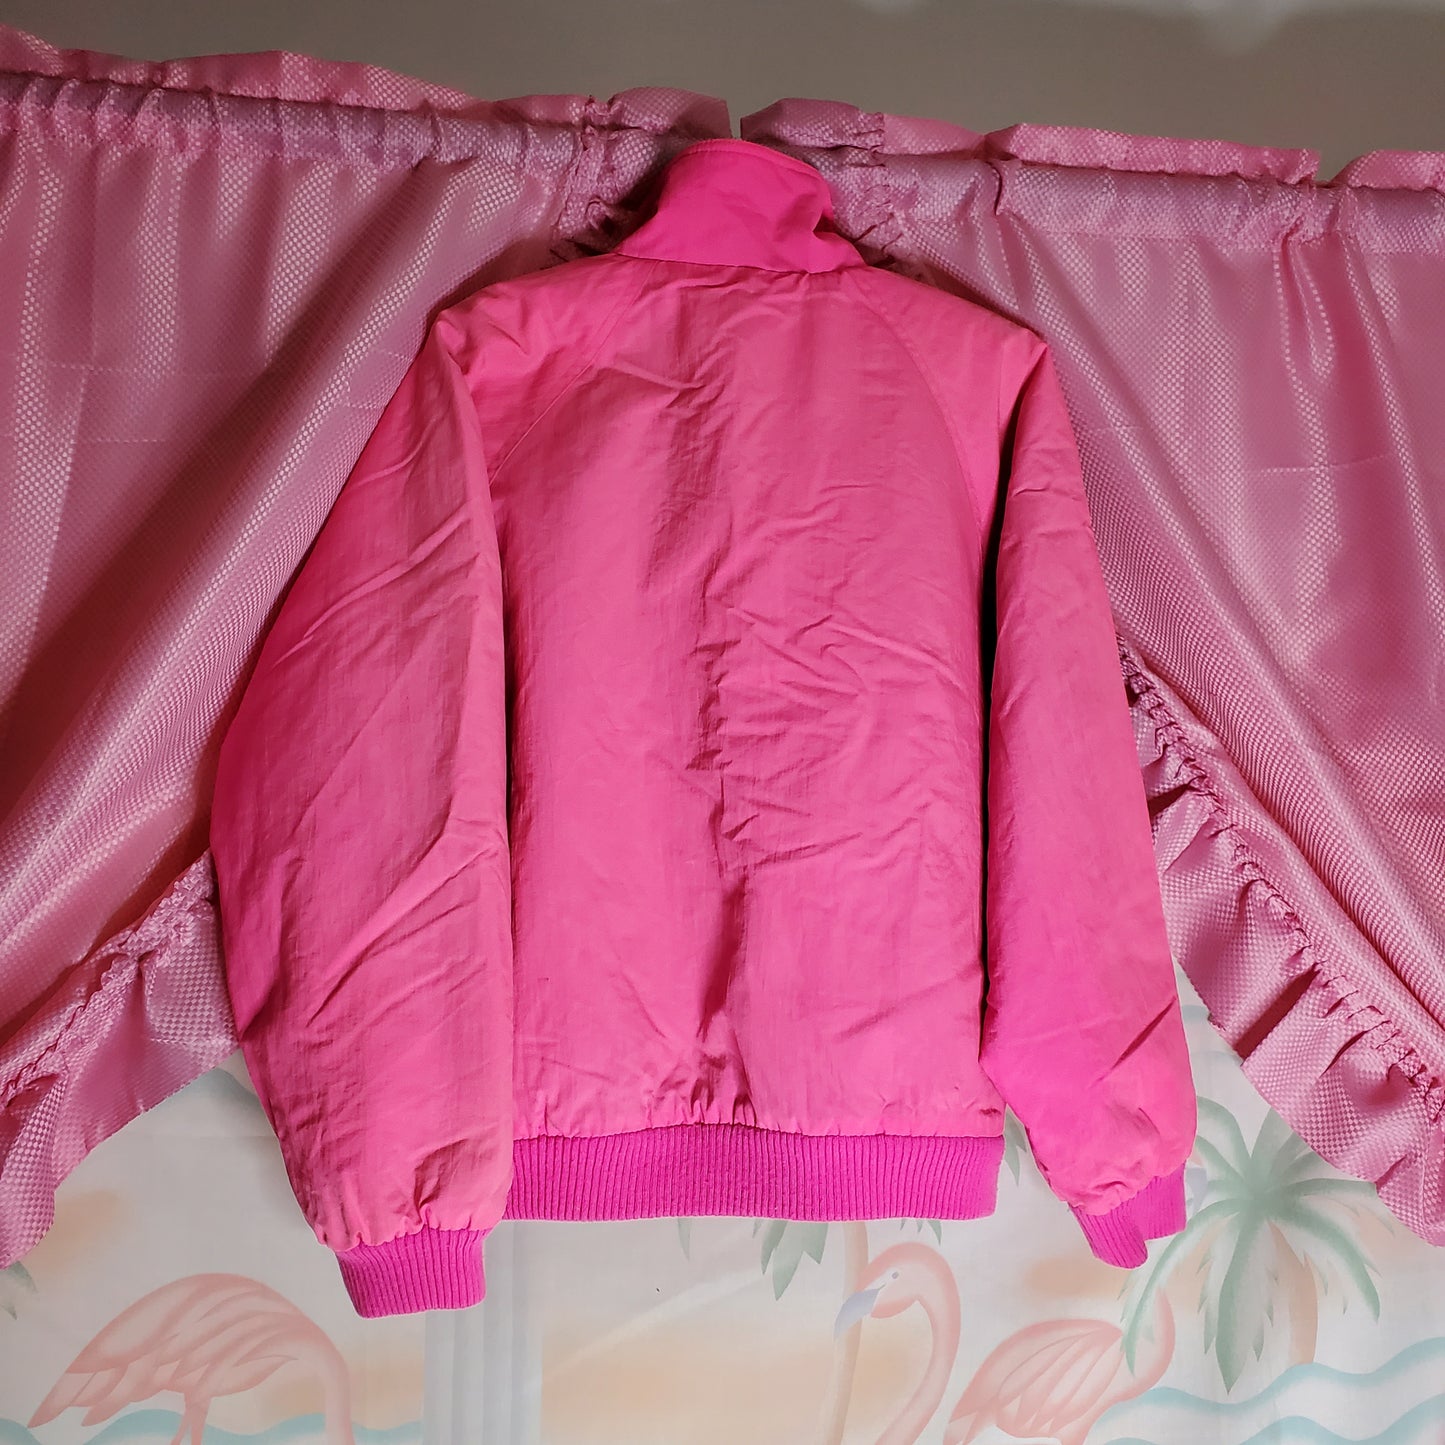 Neon fleece lined sportsjacket